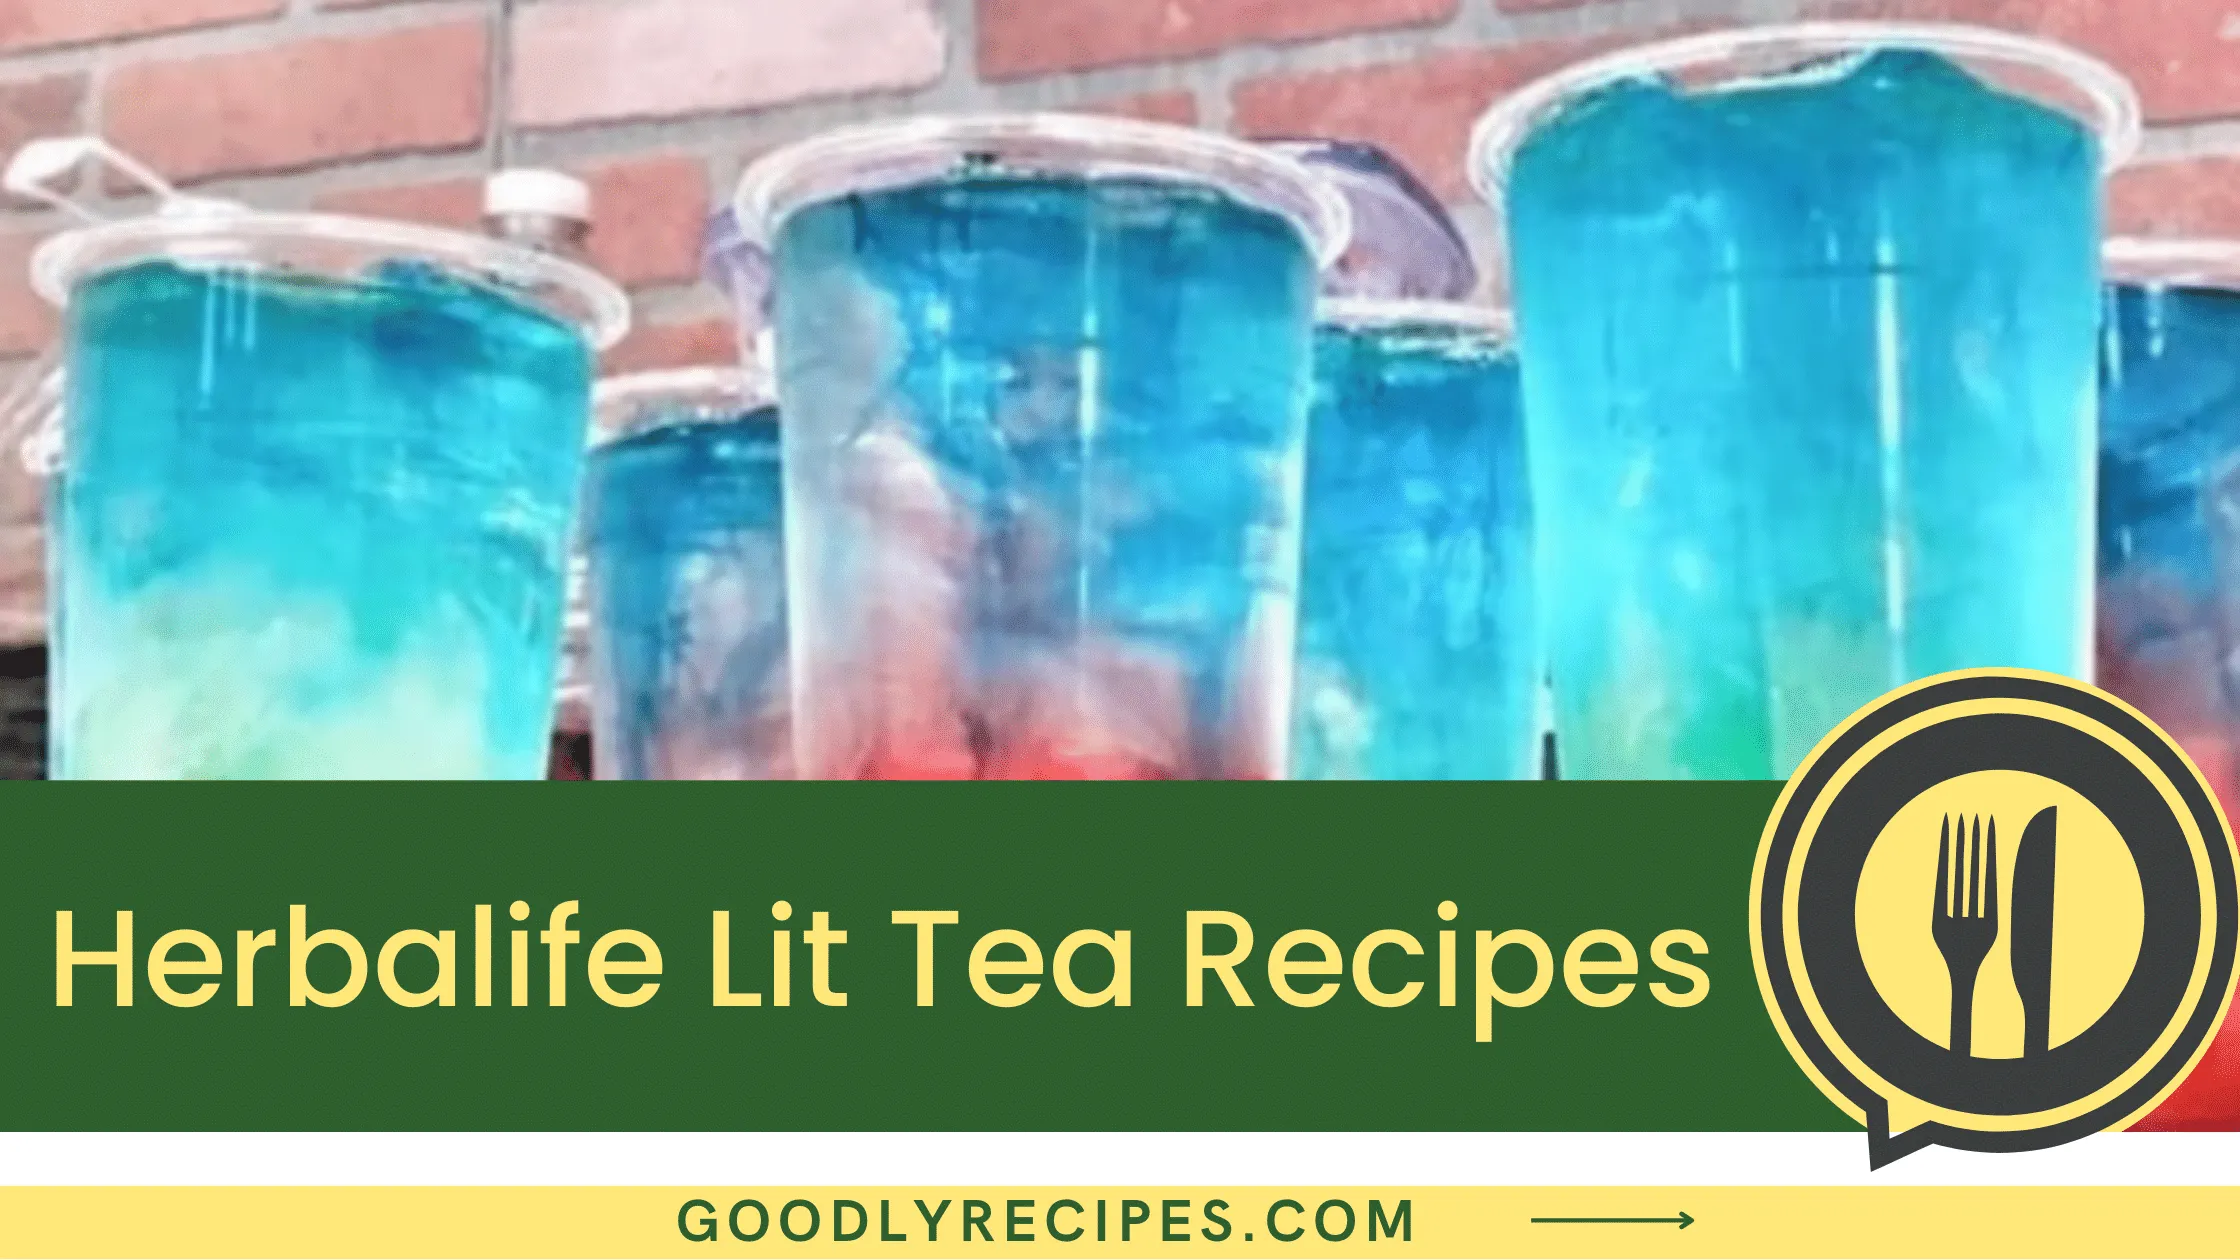 What is Herbalife Lit Tea?